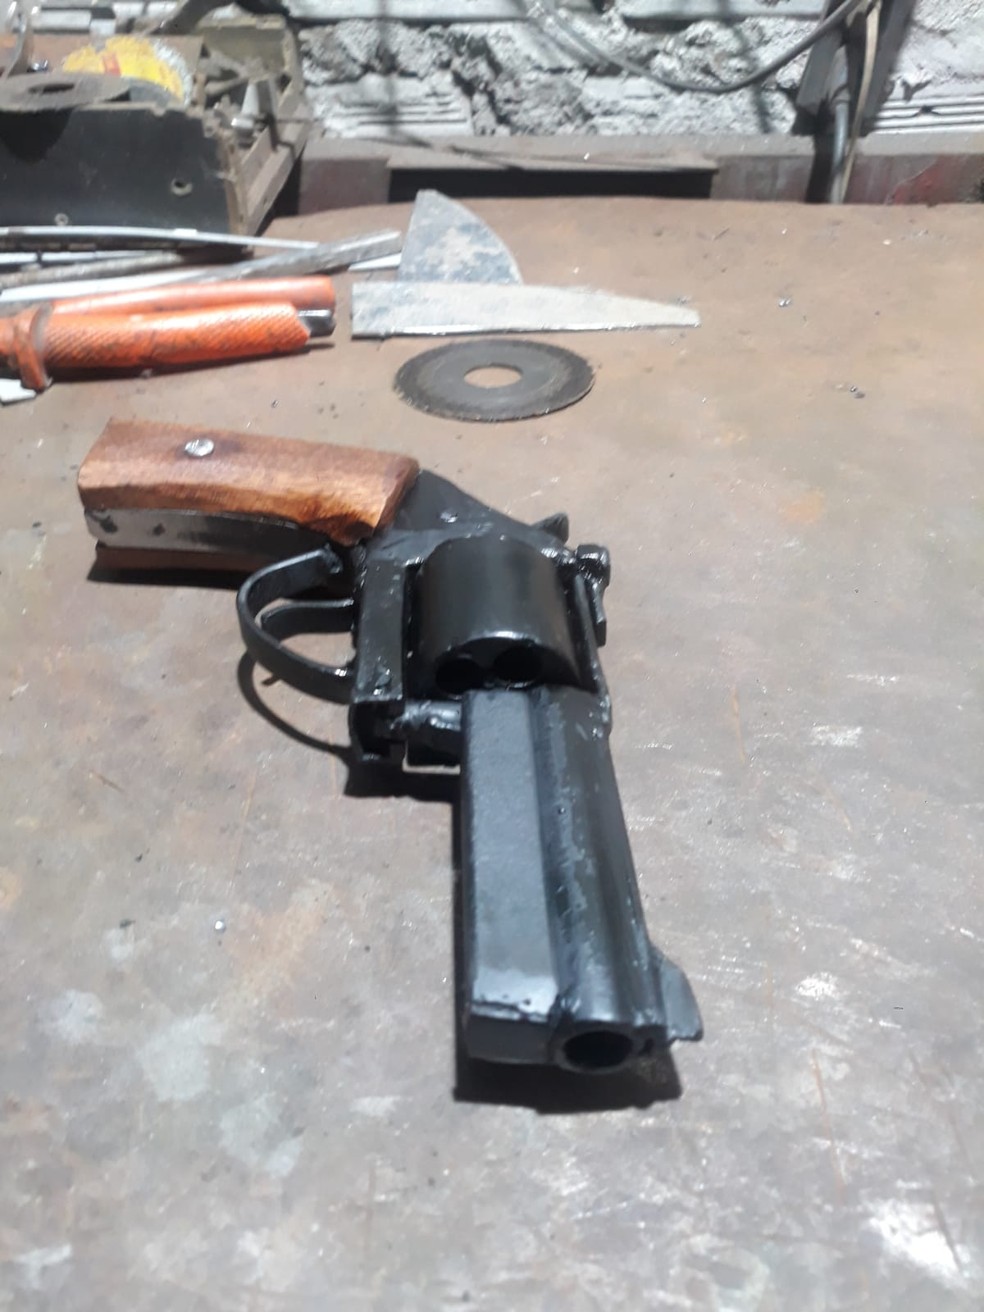 Uma das armas encontradas com suspeitos na Zona Oeste de Natal — Foto: PM/Cedida